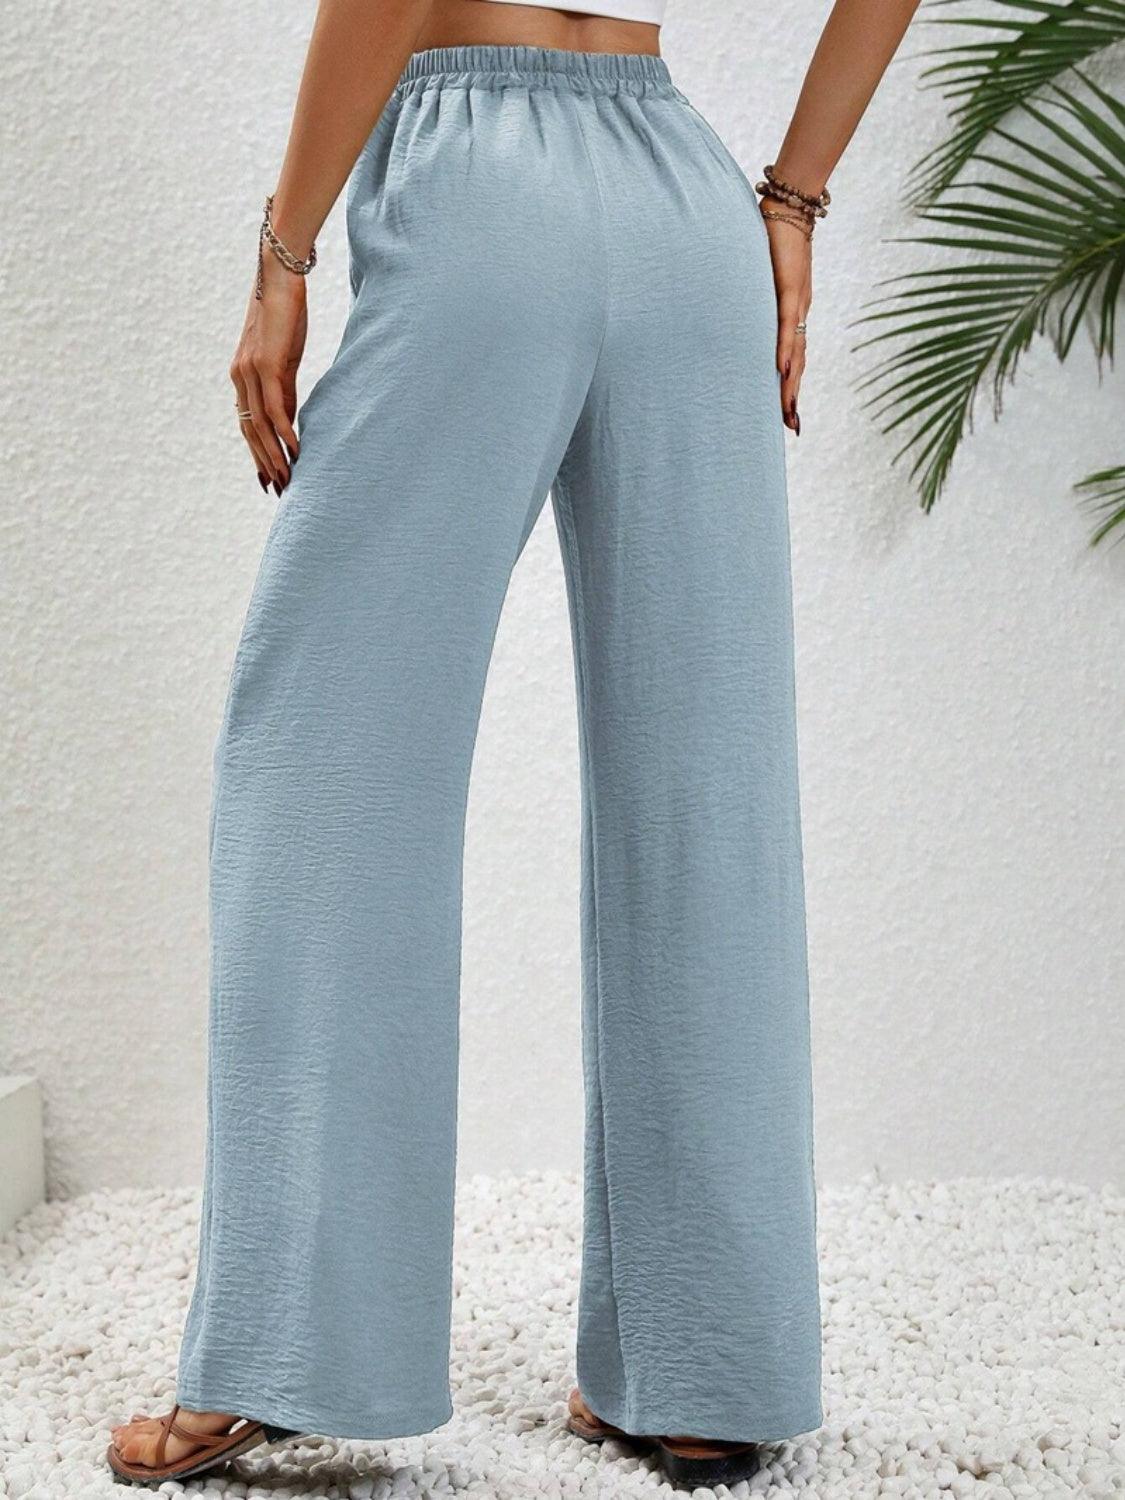 Bona Fide Fashion - Wide Leg Drawstring Pants - Women Fashion - Bona Fide Fashion